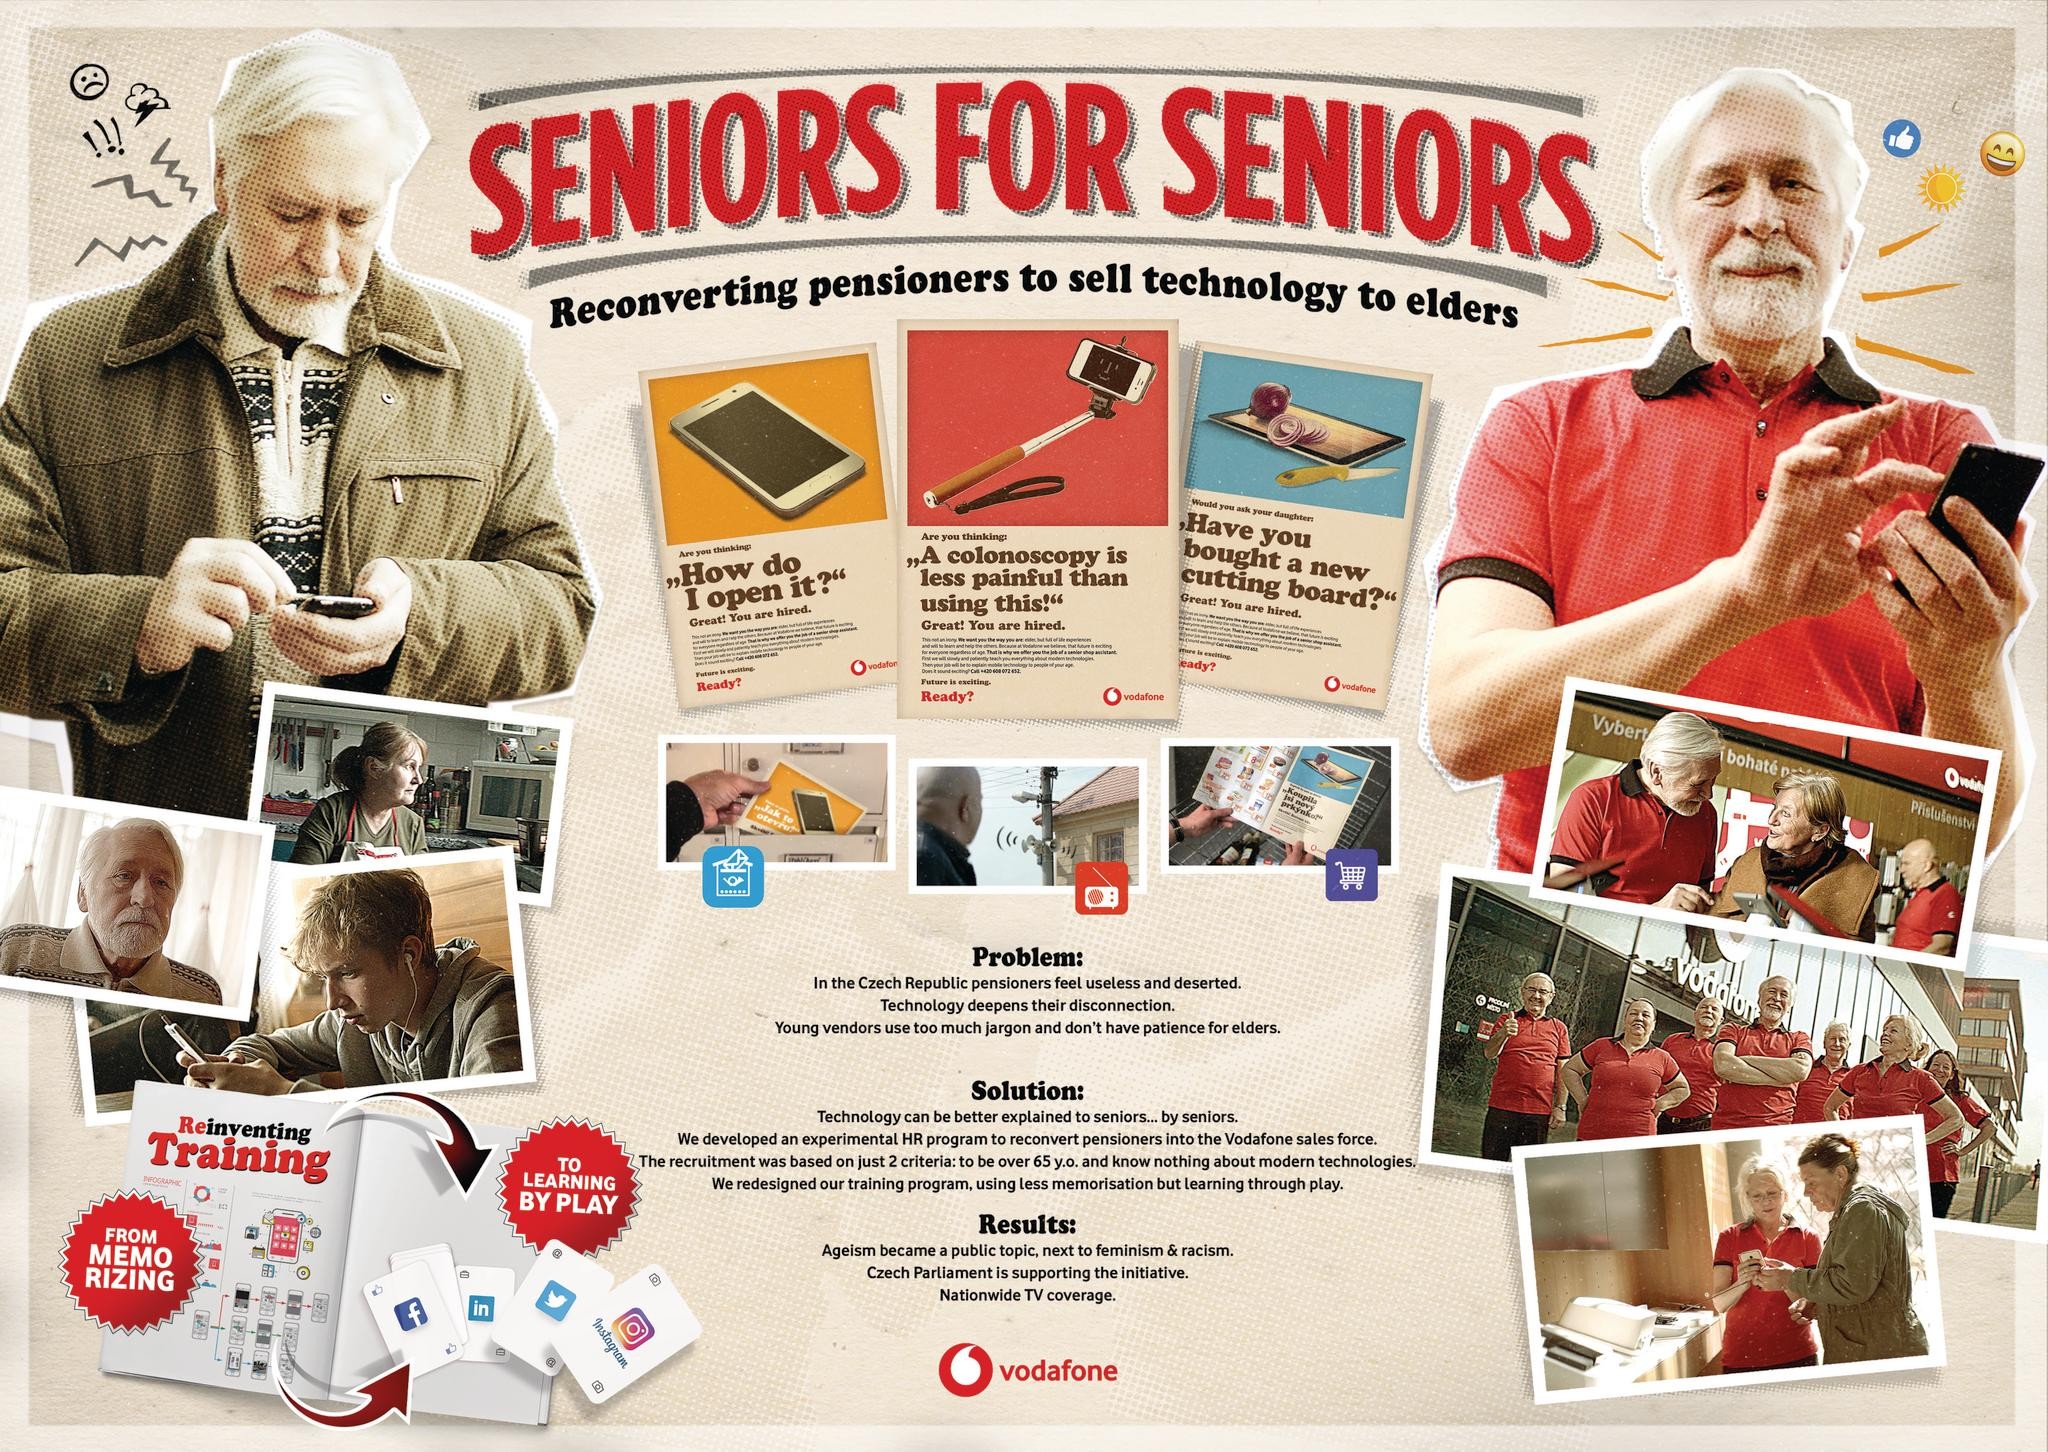 Seniors for seniors